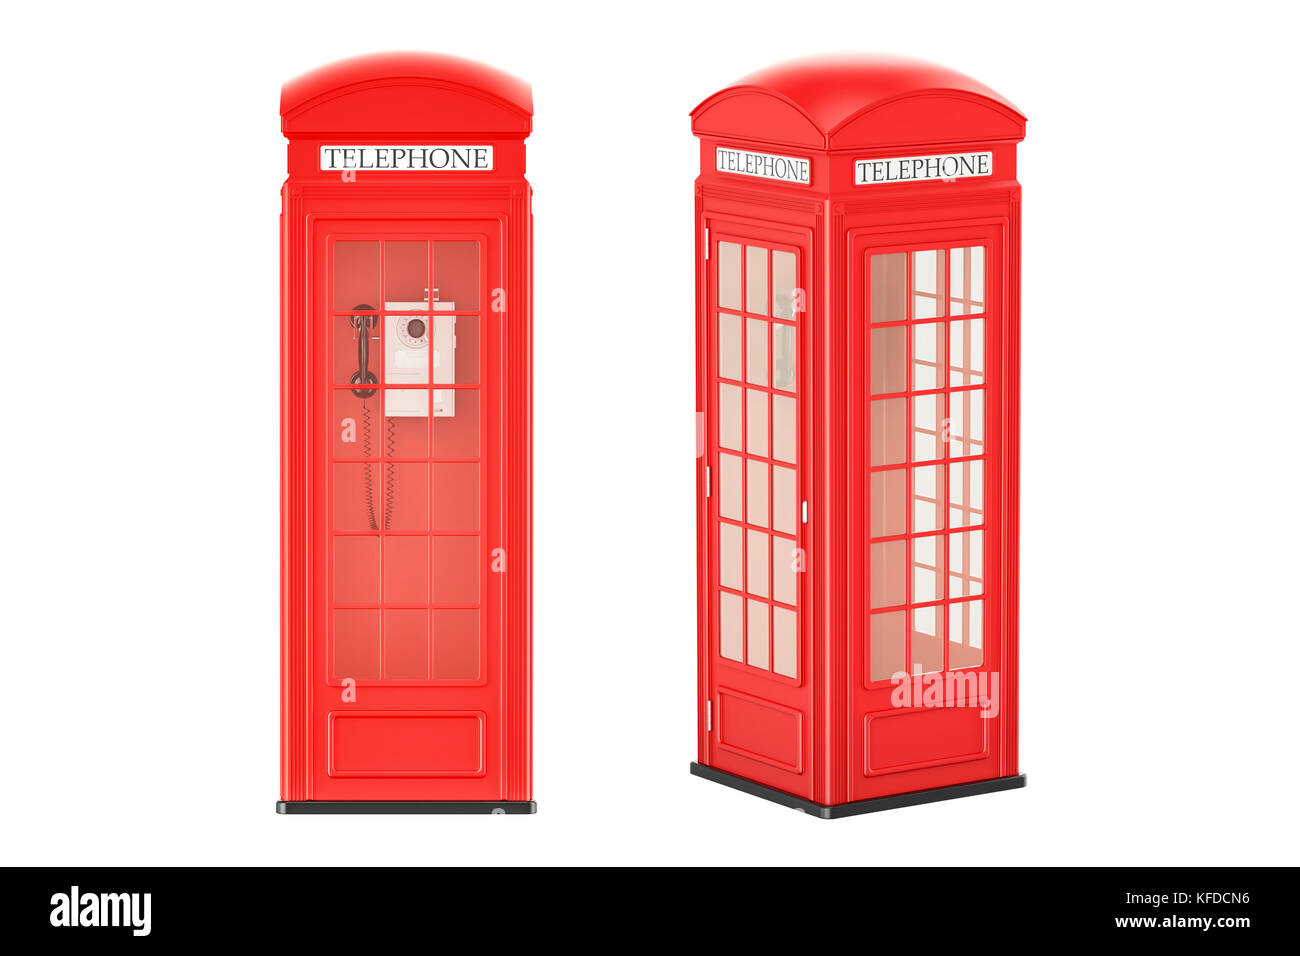 Cabine telefoniche rosse, vista anteriore e laterale, rendering 3D isolati su sfondo bianco Foto Stock